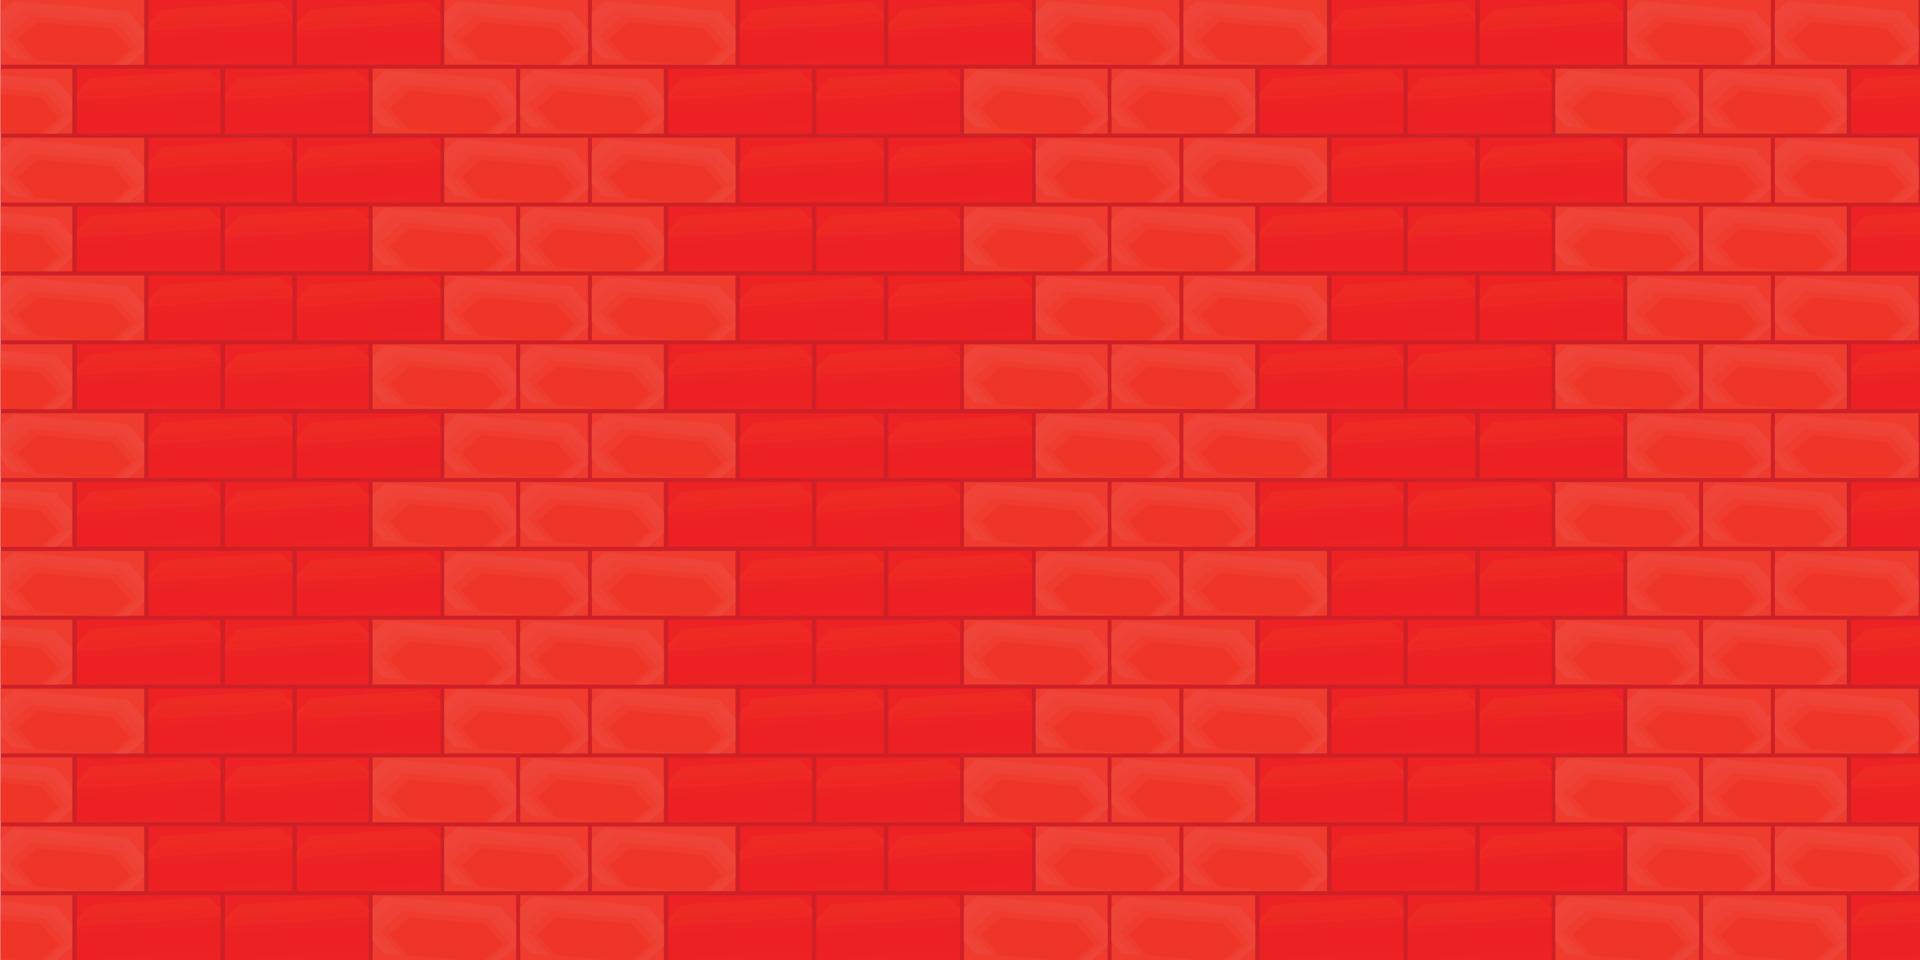 rojo brillante colorido ladrillo pared edificio arquitectura telón de fondo abstracto fondo papel pintado patrón sin costura vector ilustración